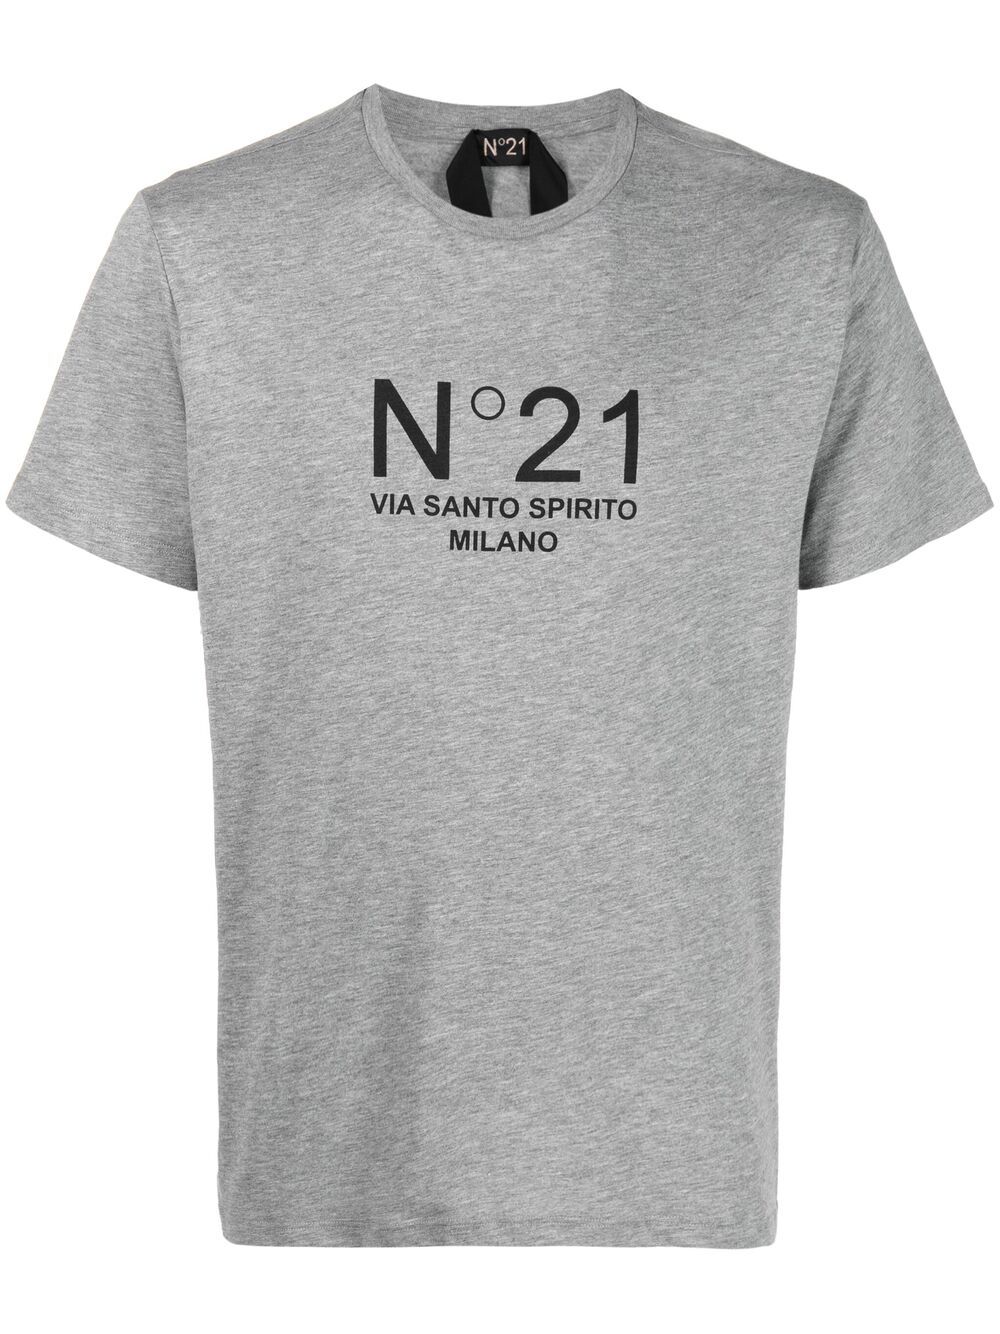 фото Nº21 футболка с логотипом